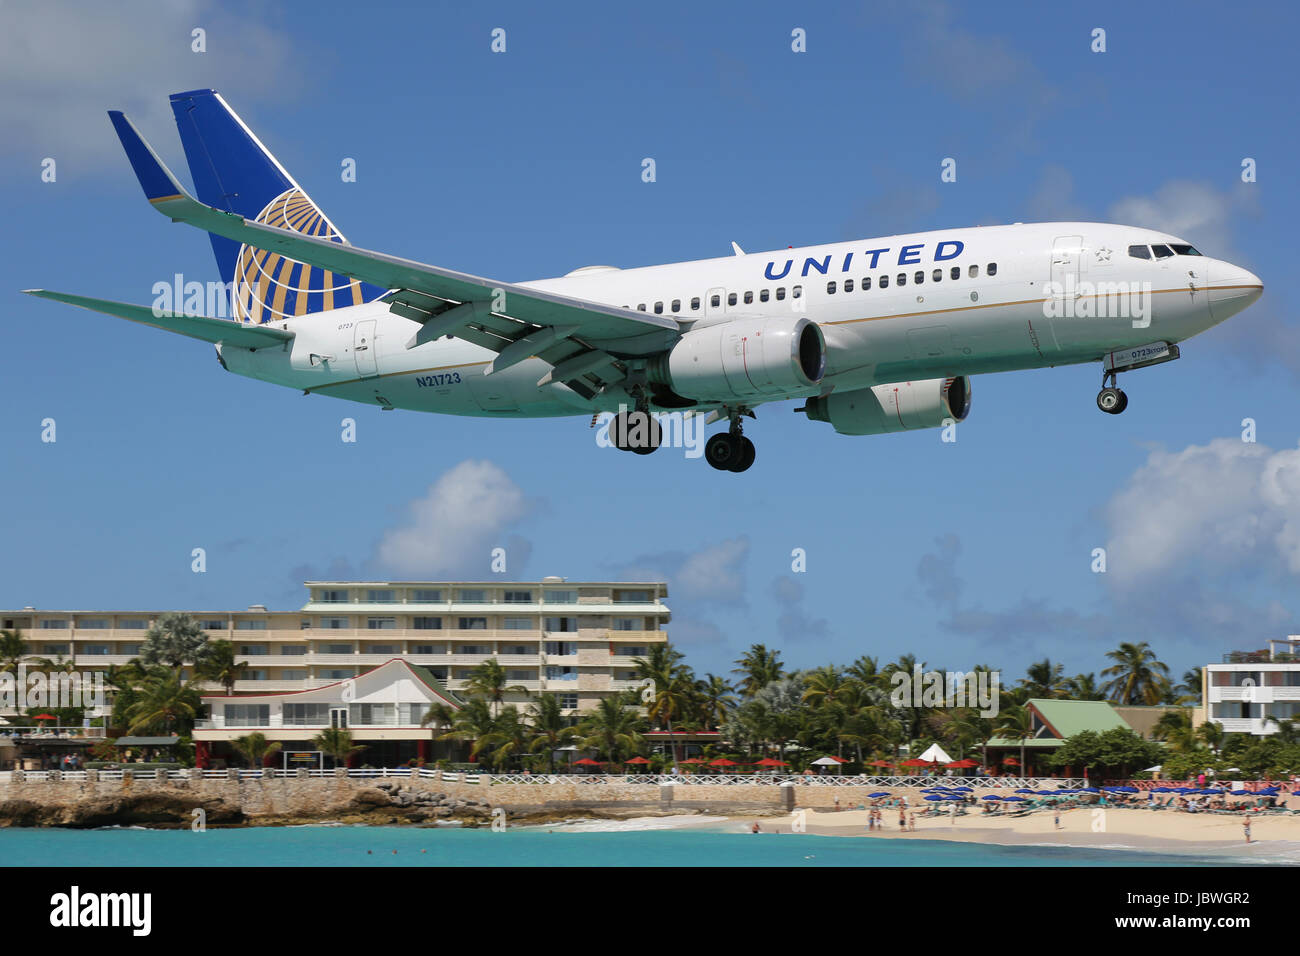 St. Maarten - 8. Februar 2014: Eine Boeing 737-700 der United Airlines Mit der Kennung N21723 Landet Auf Dem Flughafen von St. Maarten (SXM). St. Maarten ist Einer der Gefährlichsten Flughäfen der Welt. United Airlines ist Eine U.S.-Amerikanische Fluggesellschaft Mit Dem Hauptsitz in Chicago. Stockfoto